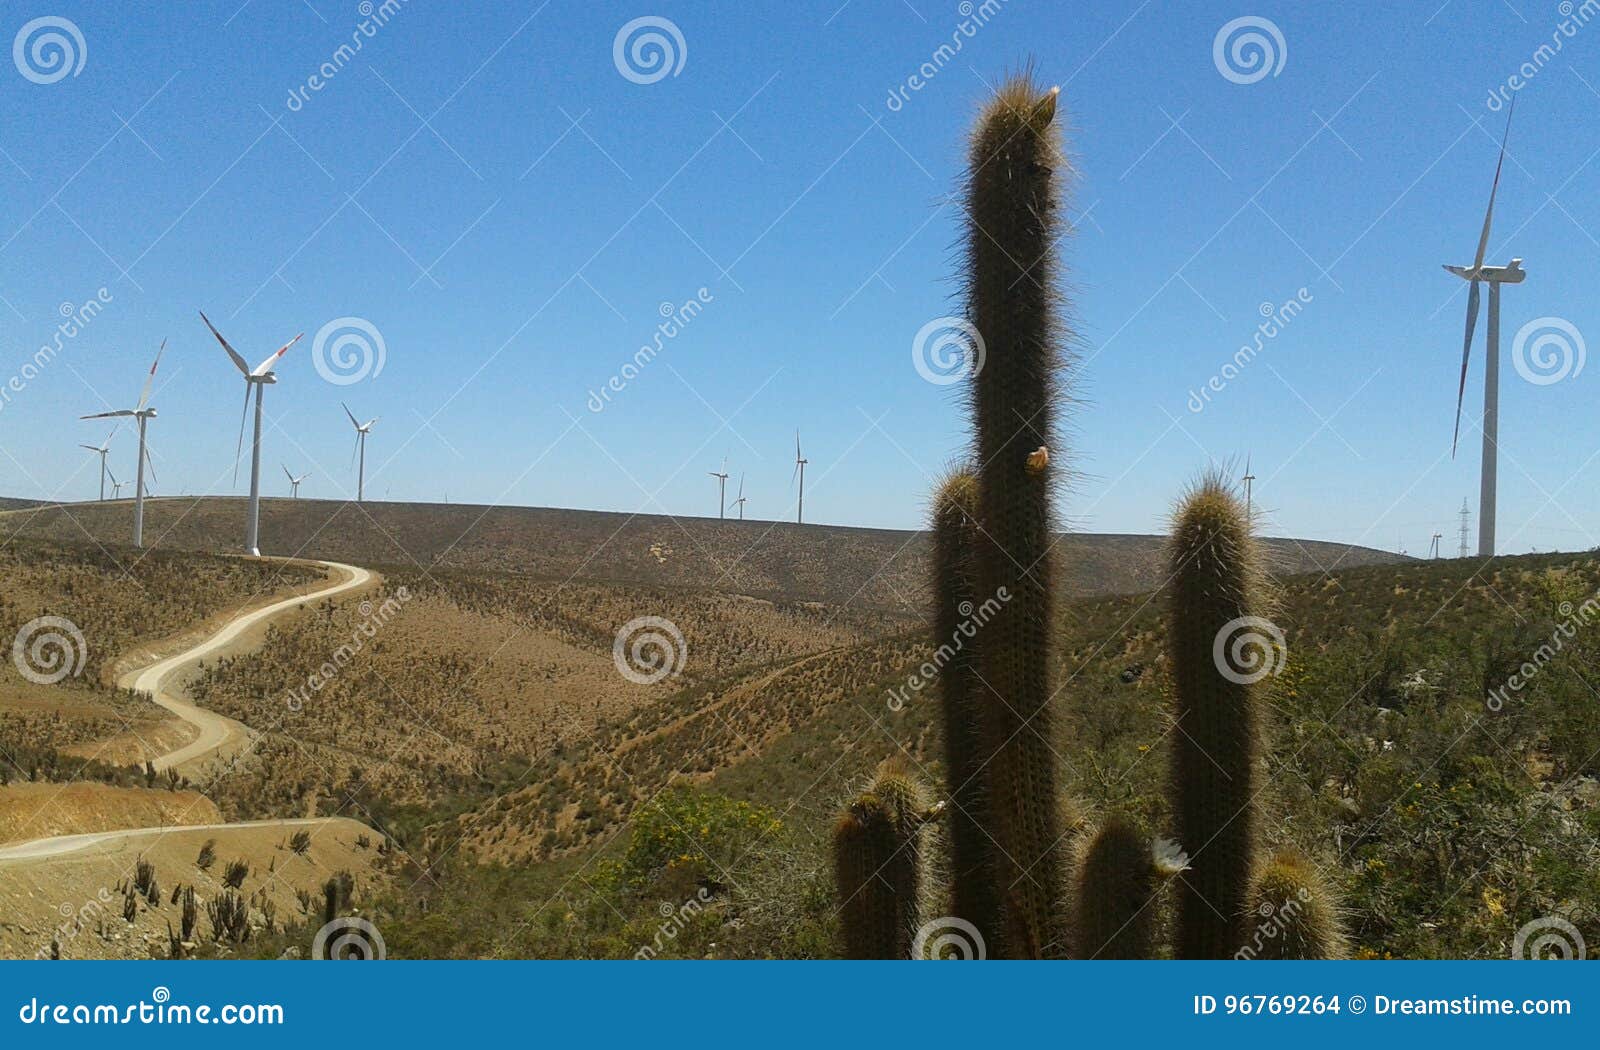 cactus in wind farm